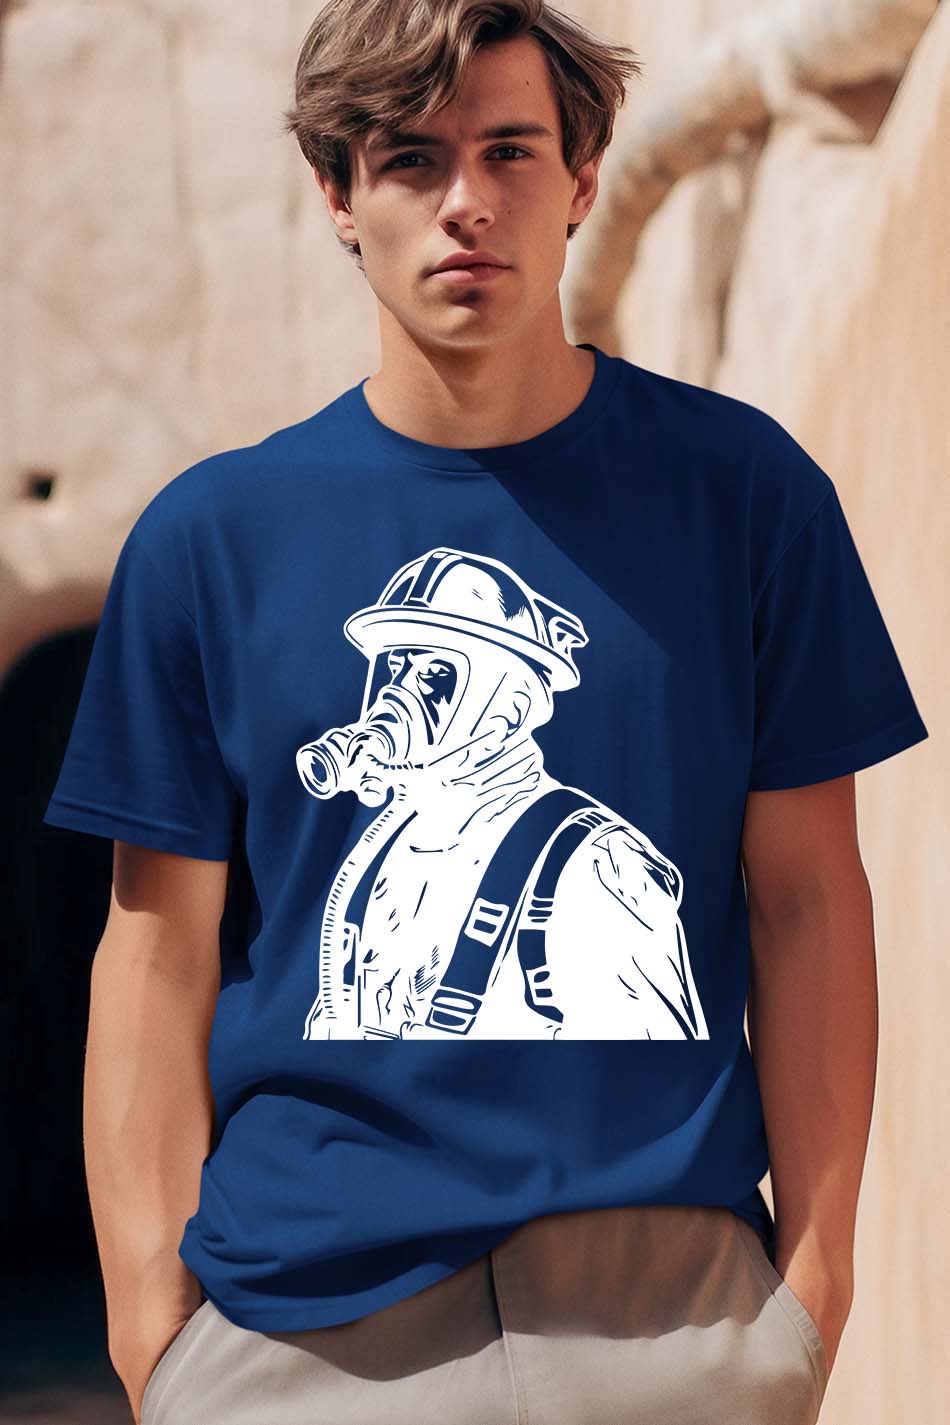 Fire Service T Shirt